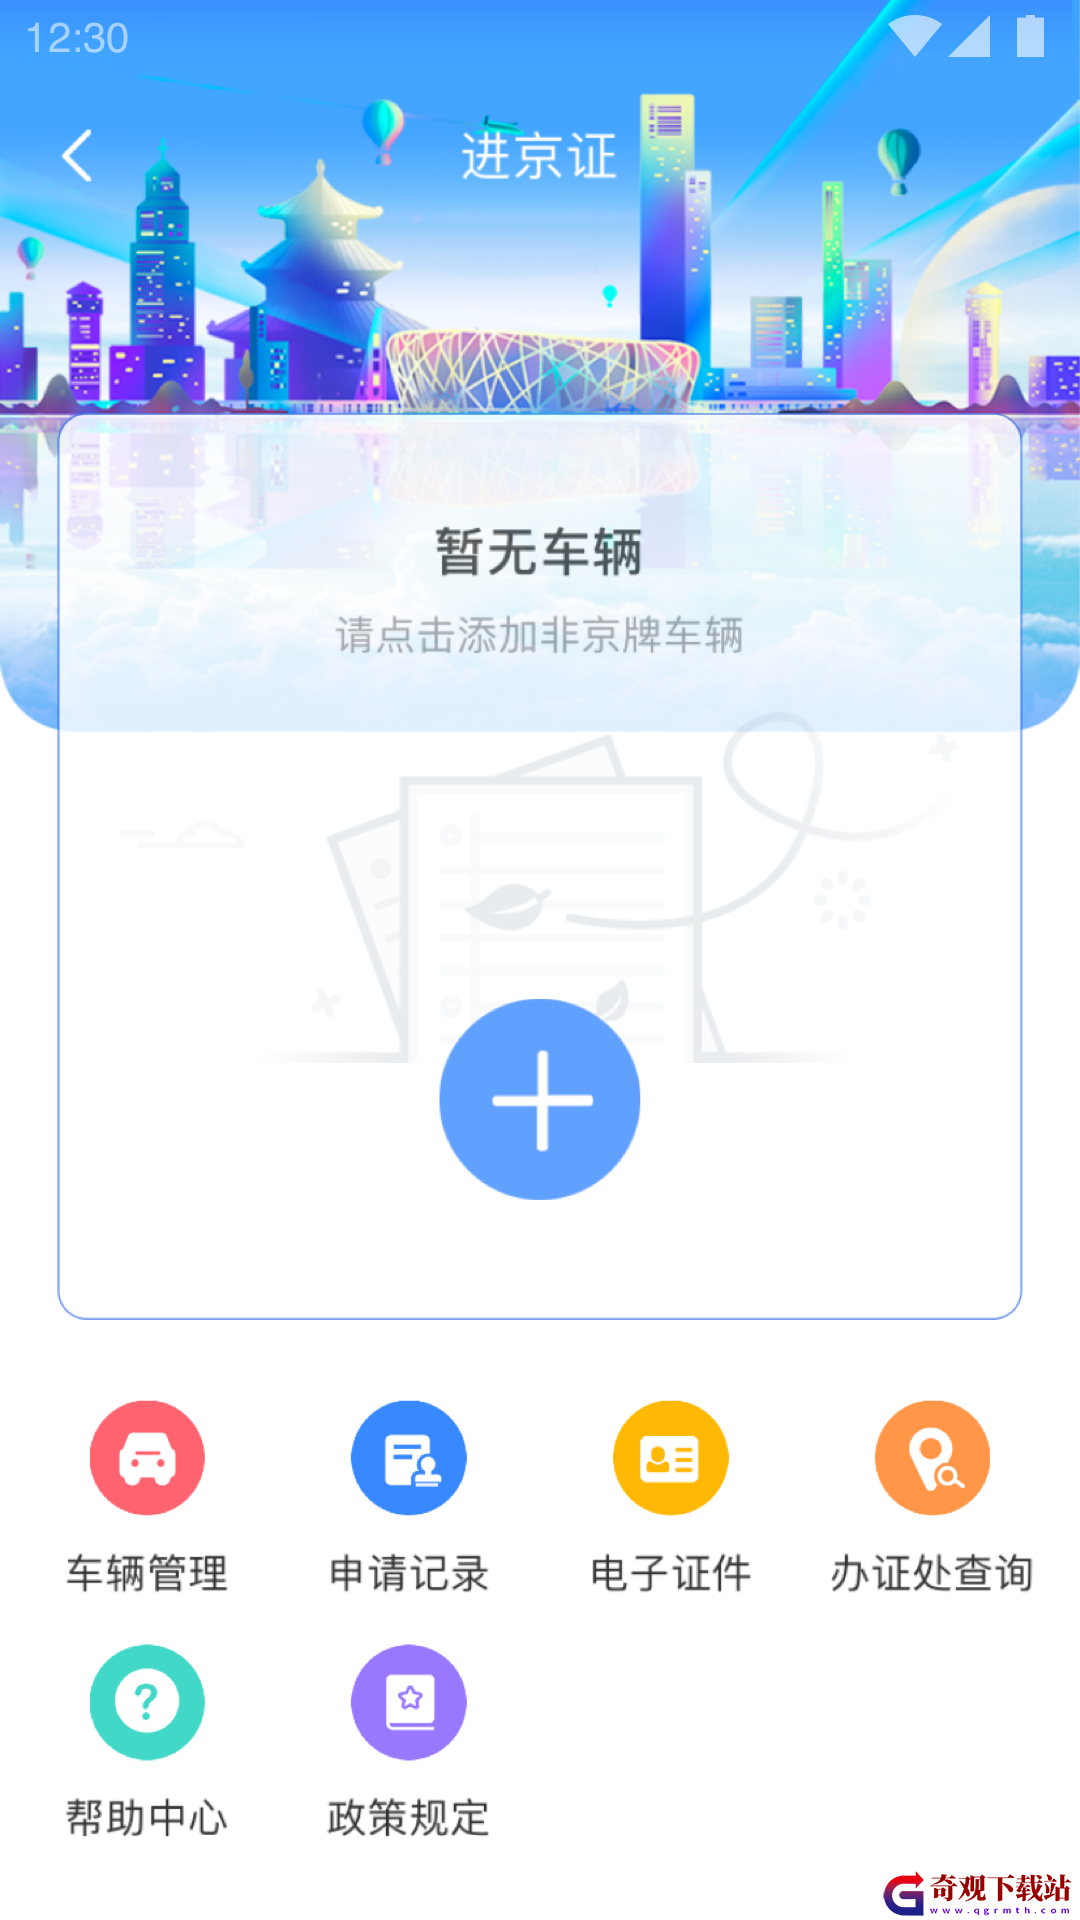 北京交*
app,北京交*
app最新版本